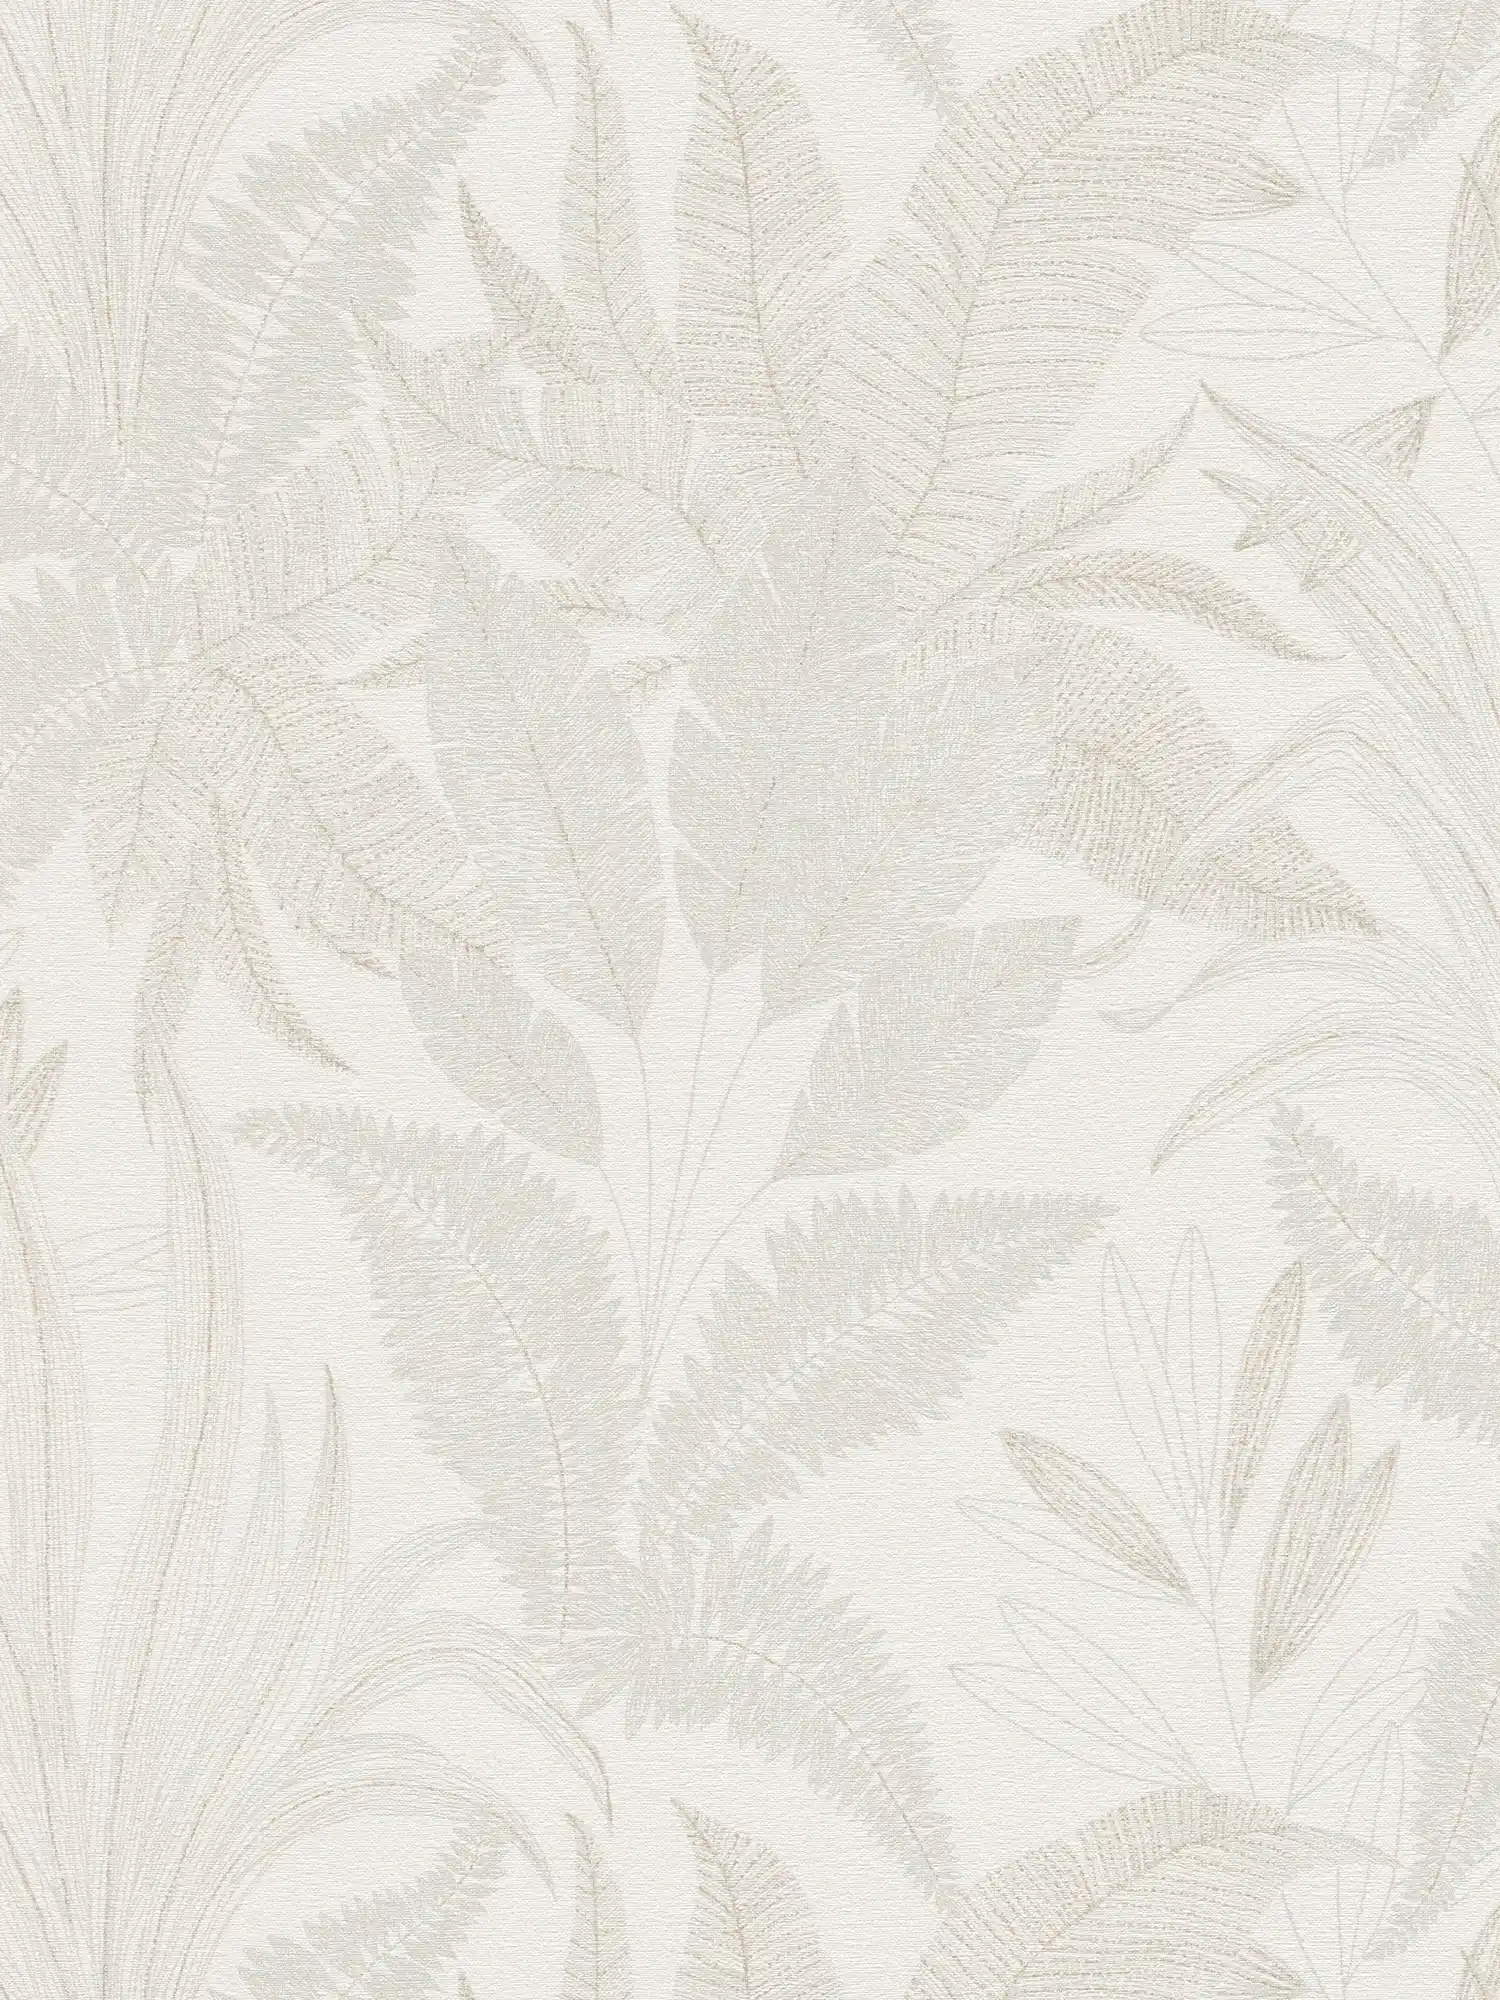 Bloemrijkvliesbehang met bladmotief in zachte kleuren - crème, beige
